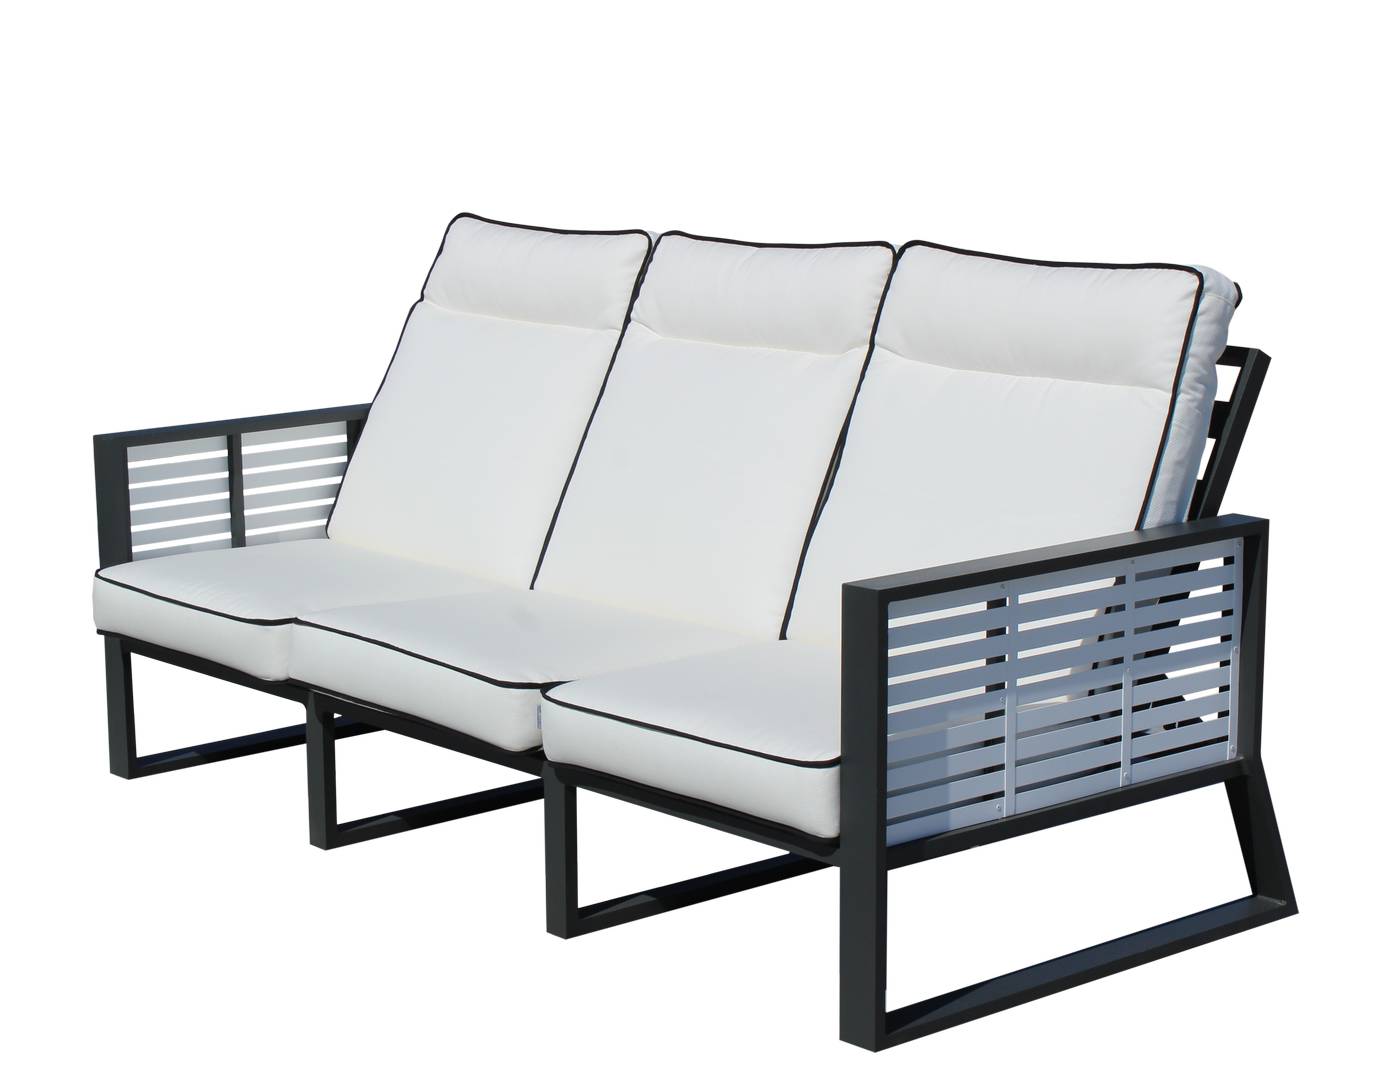 Set Aluminio Luxe Samira-10 - Exclusivo conjunto de alumnio bicolor: 1 sofá de 3 plazas reclinable + 2 sillones reclinables  + 2 reposapiés + 1 mesa de centro.